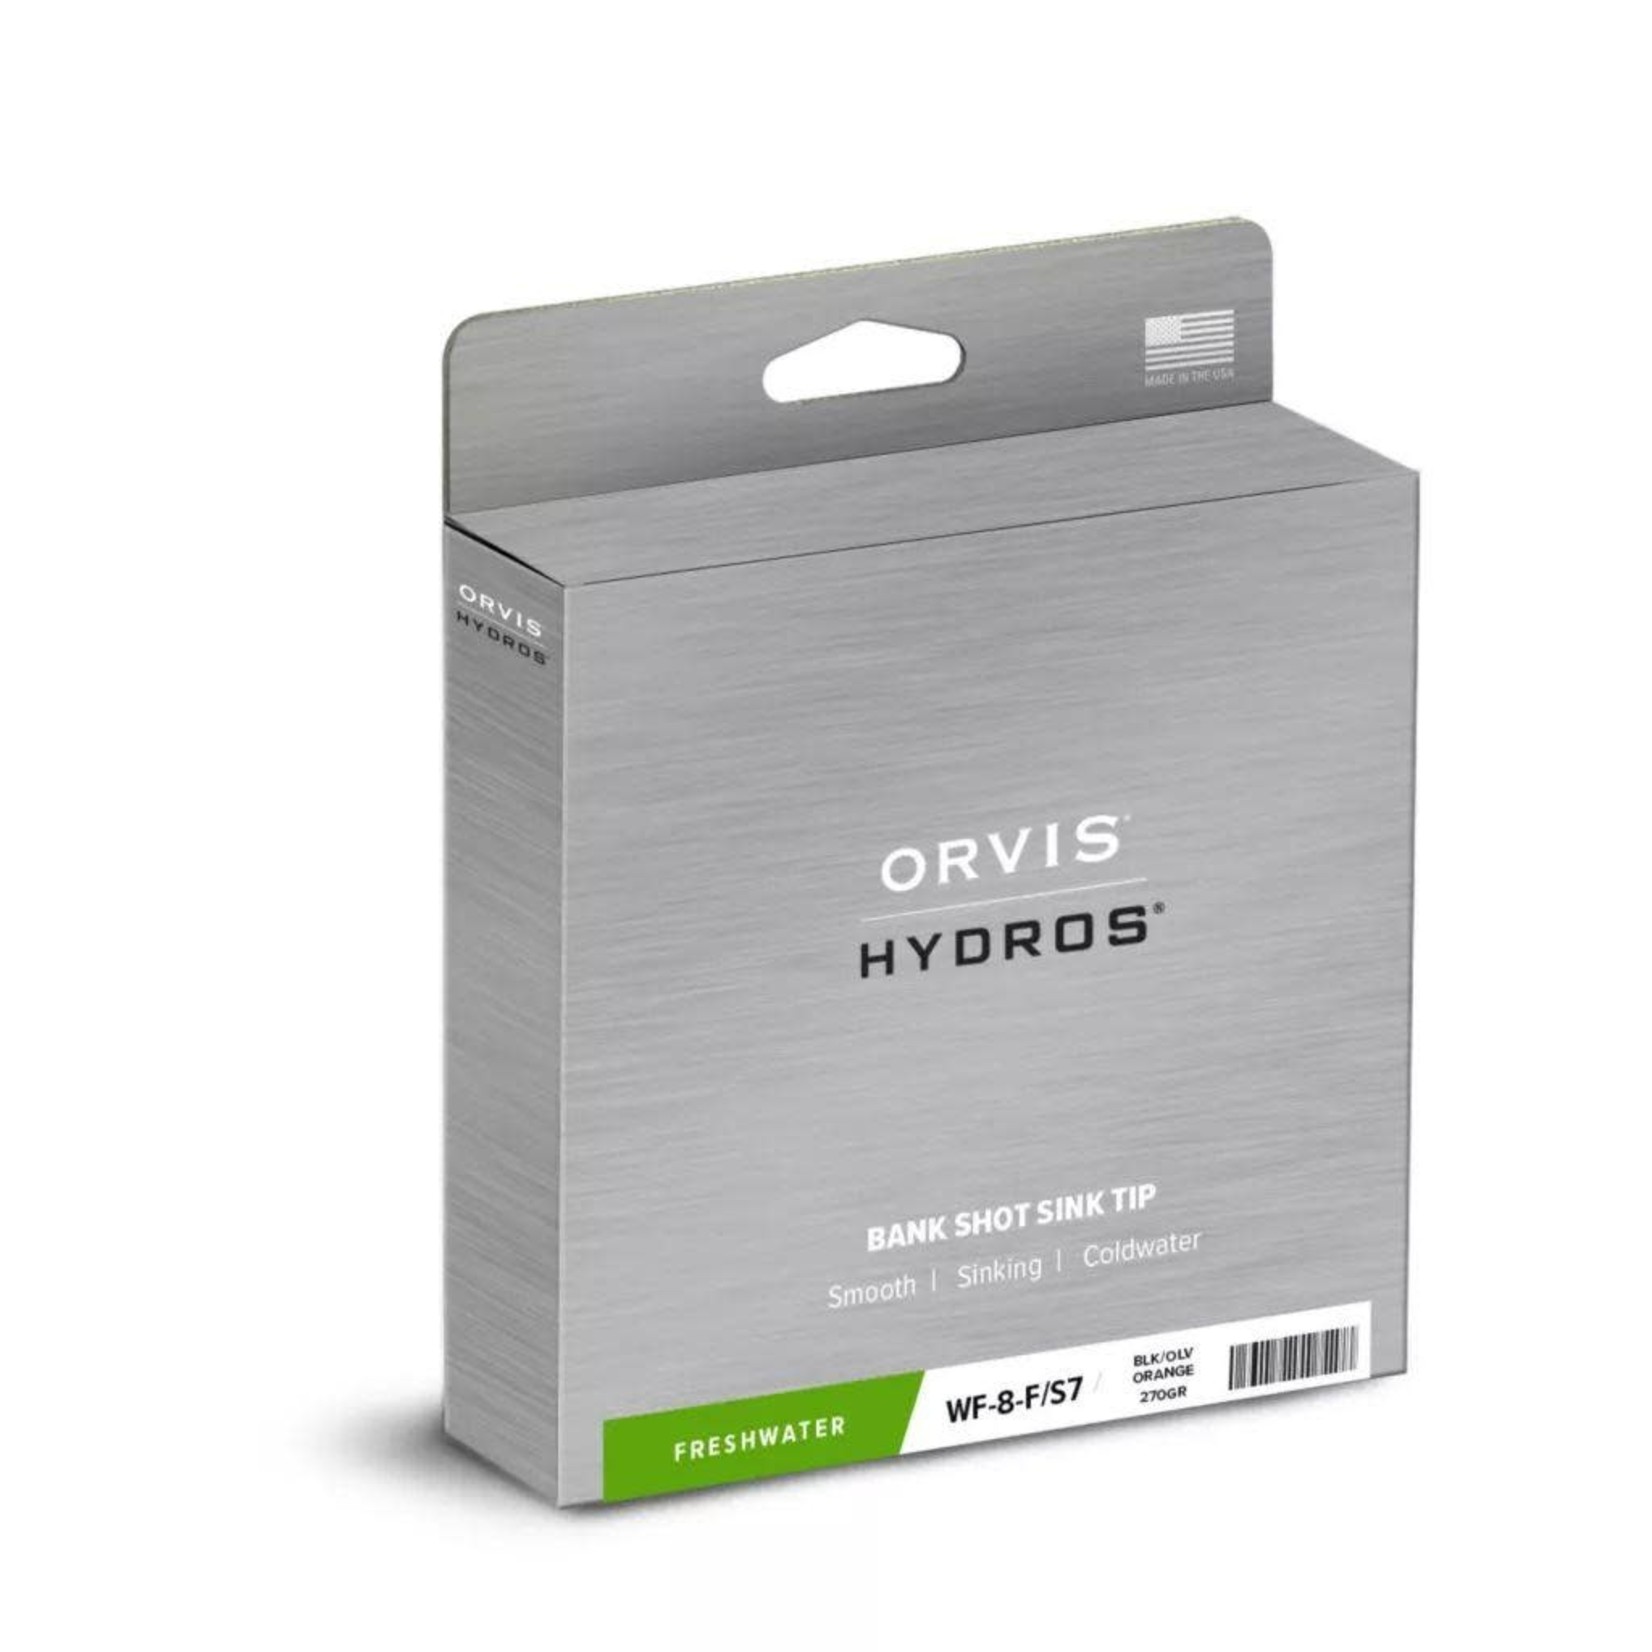 ORVIS Orvis Hydros Bank Shot Sink Tip